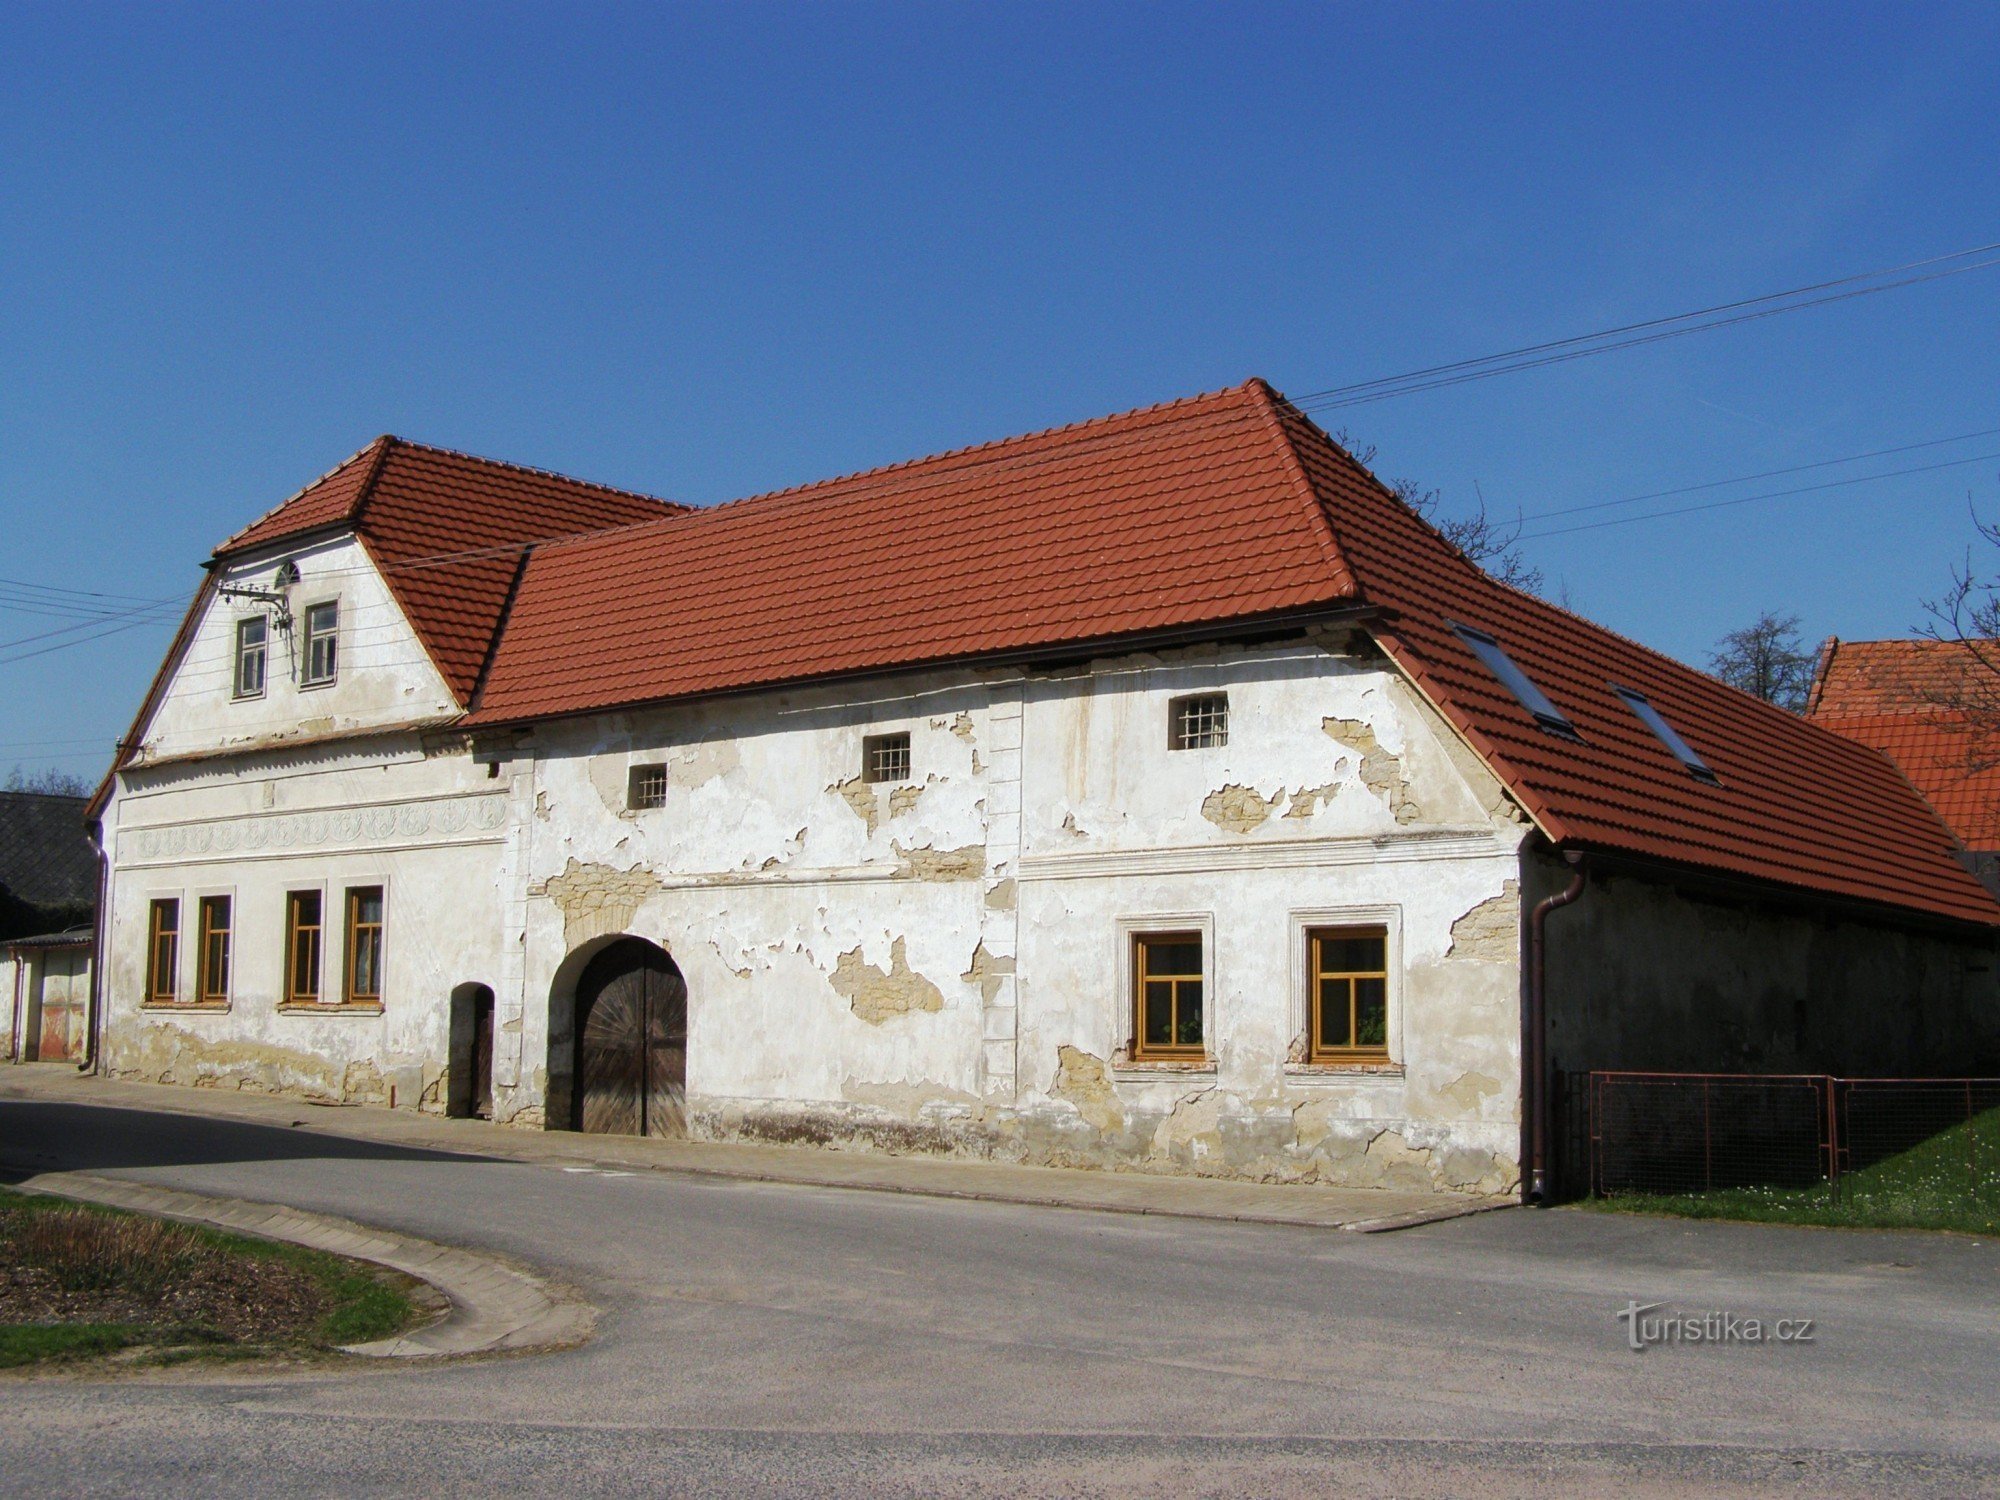 Újezdec - ein alter Bauernhof